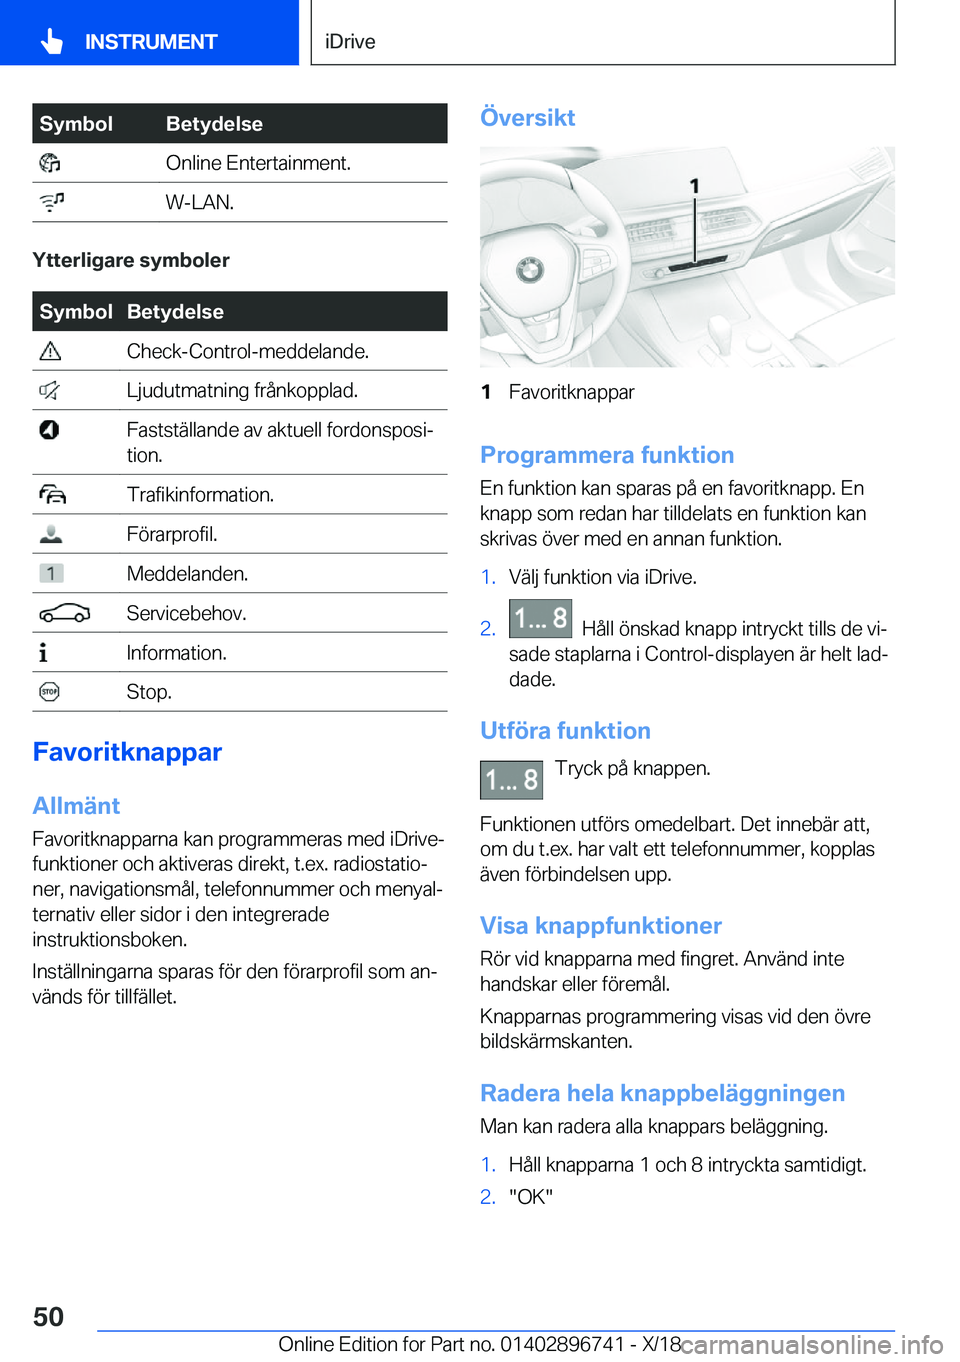 BMW X5 2019  InstruktionsbÖcker (in Swedish) �S�y�m�b�o�l�B�e�t�y�d�e�l�s�e��O�n�l�i�n�e��E�n�t�e�r�t�a�i�n�m�e�n�t�.��W�-�L�A�N�.
�Y�t�t�e�r�l�i�g�a�r�e��s�y�m�b�o�l�e�r
�S�y�m�b�o�l�B�e�t�y�d�e�l�s�e��C�h�e�c�k�-�C�o�n�t�r�o�l�-�m�e�d�d�e